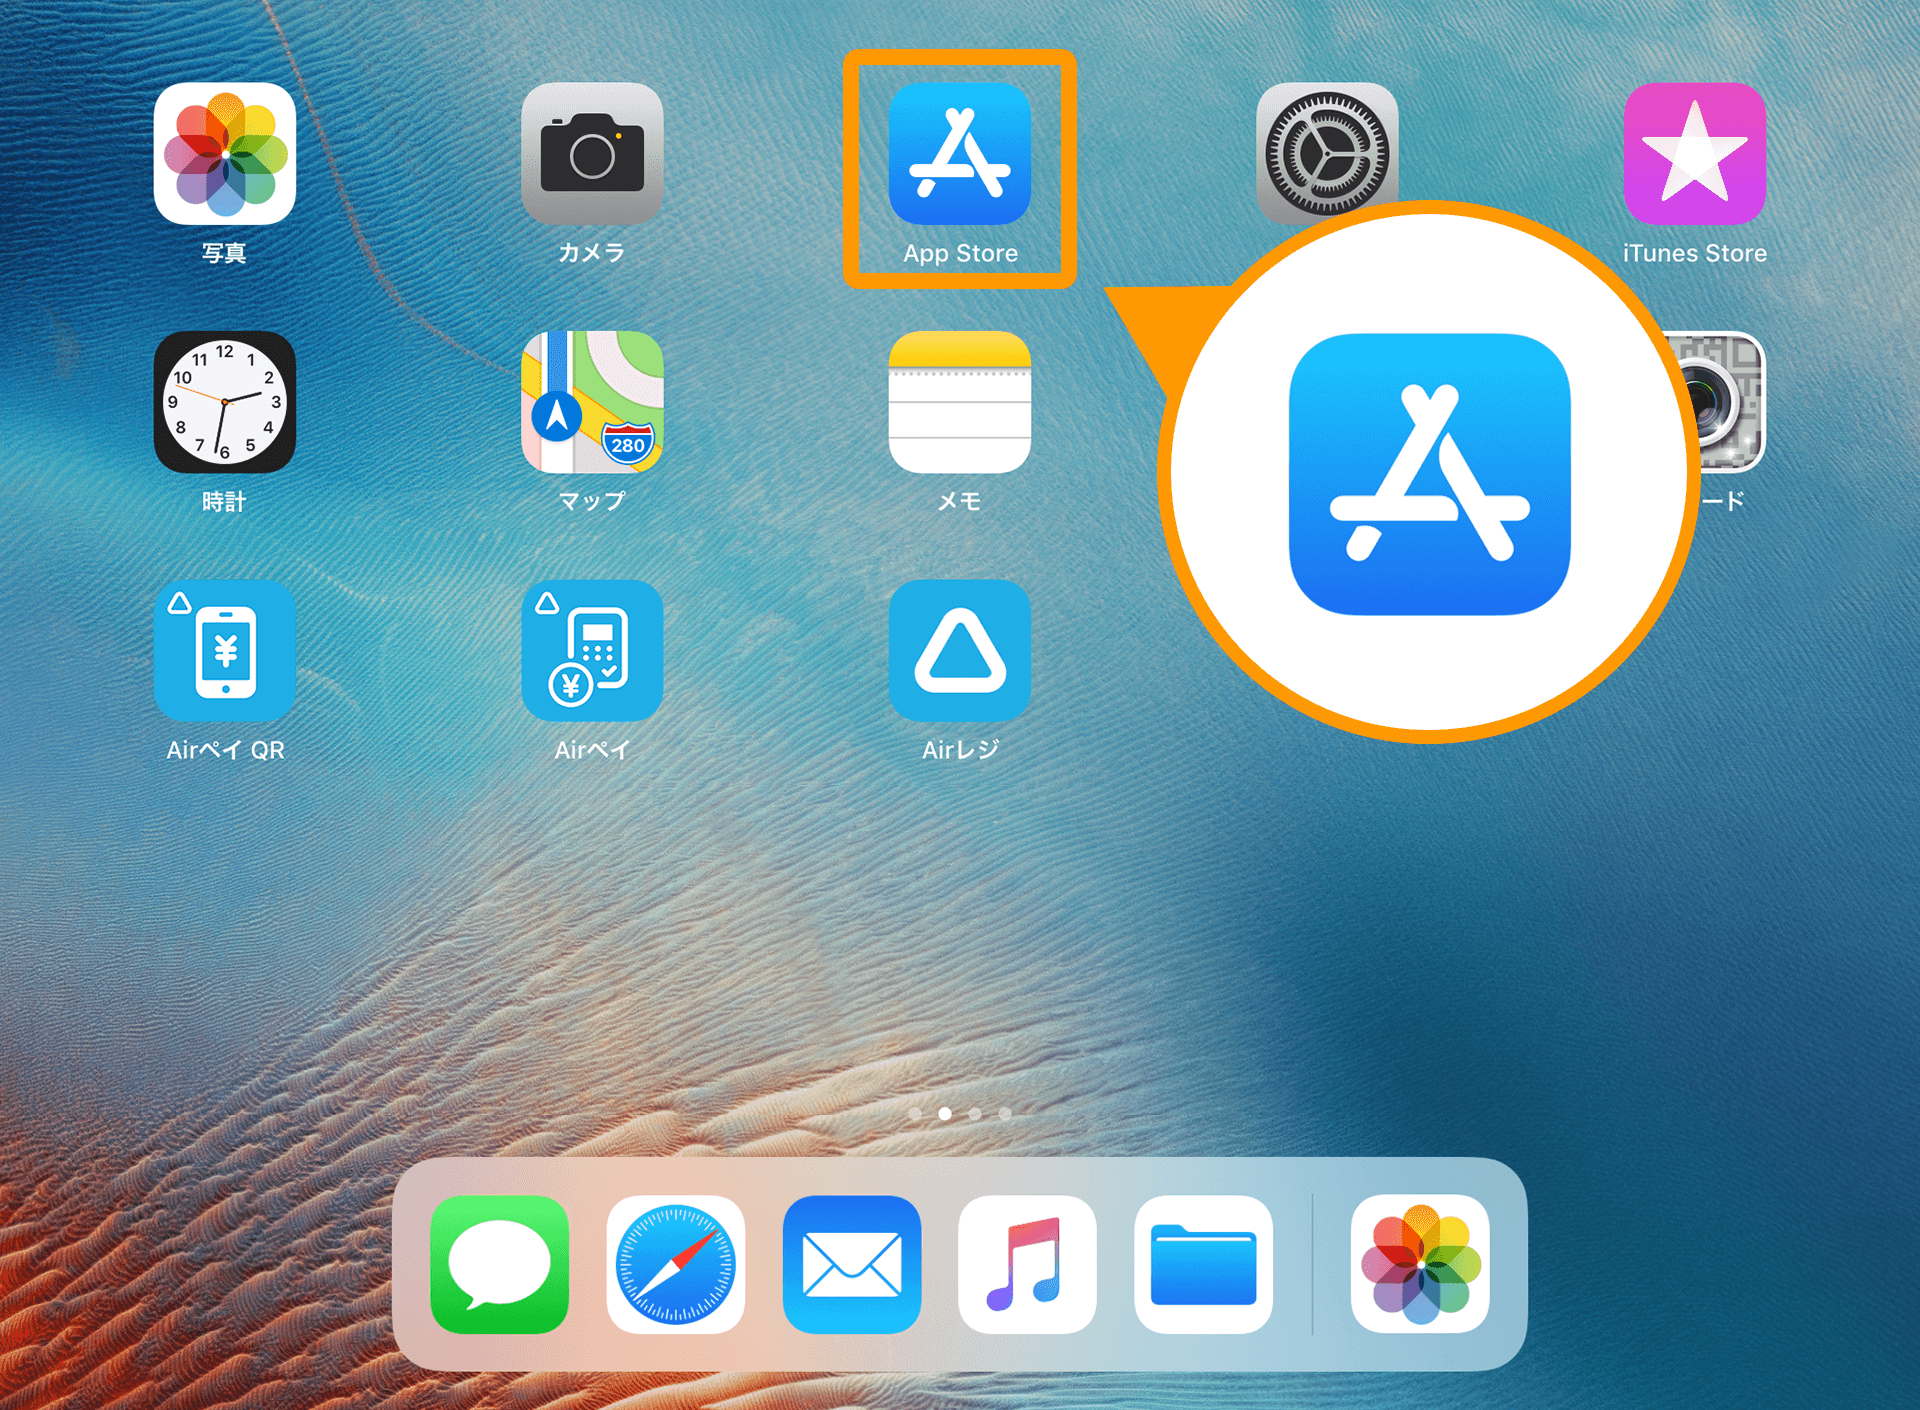 iPadホーム画面 App Store